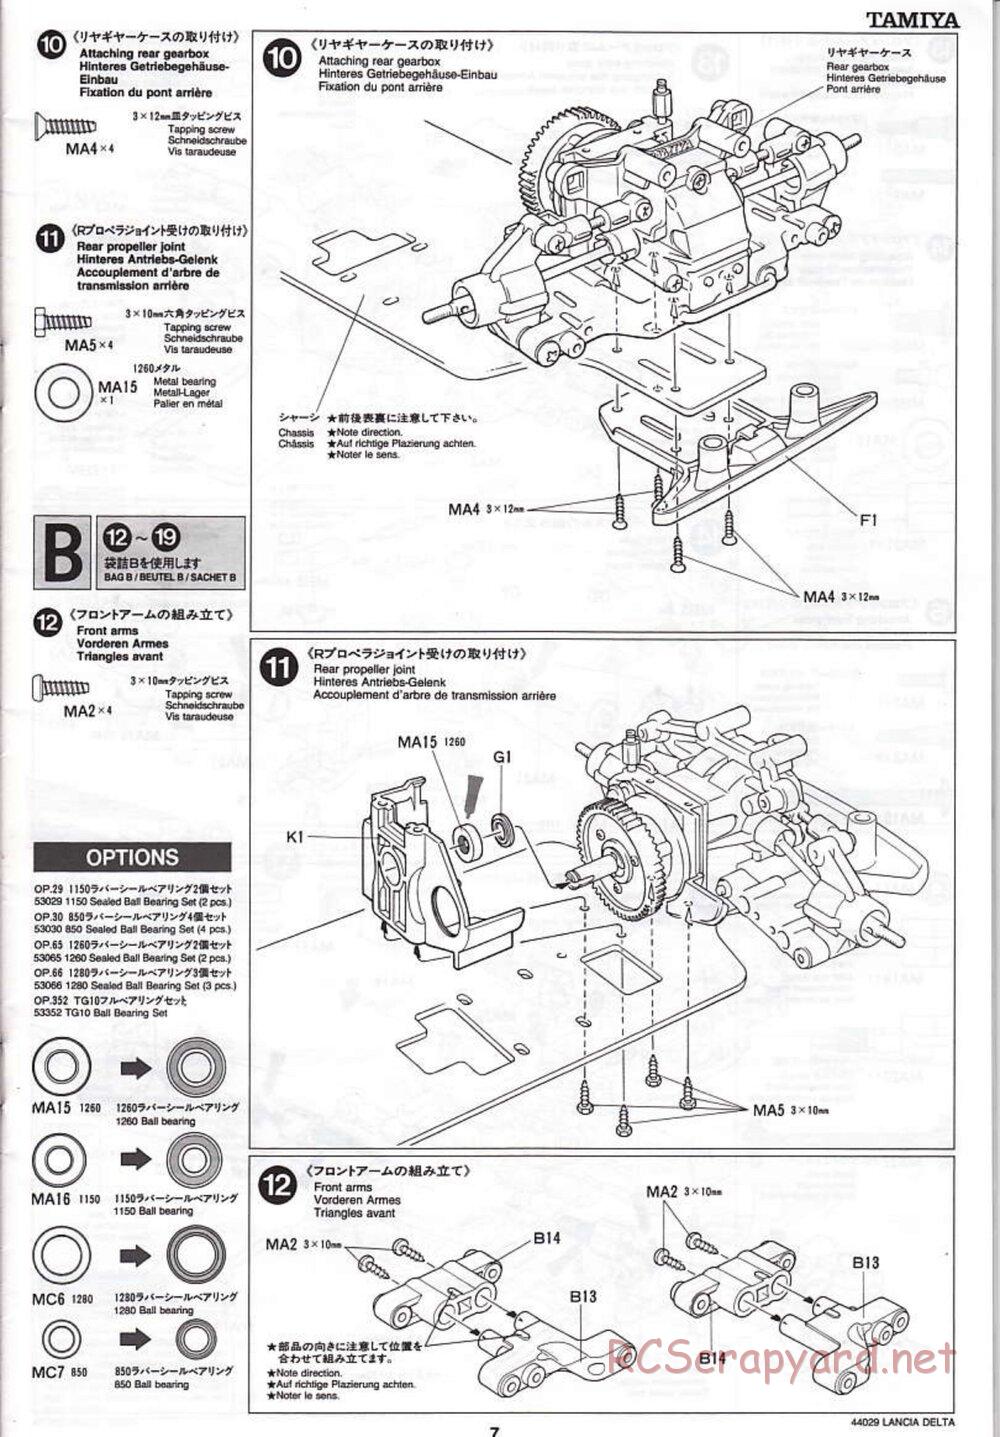 Tamiya - Lancia Delta HF Integrale - TG10 Mk.1 Chassis - Manual - Page 7